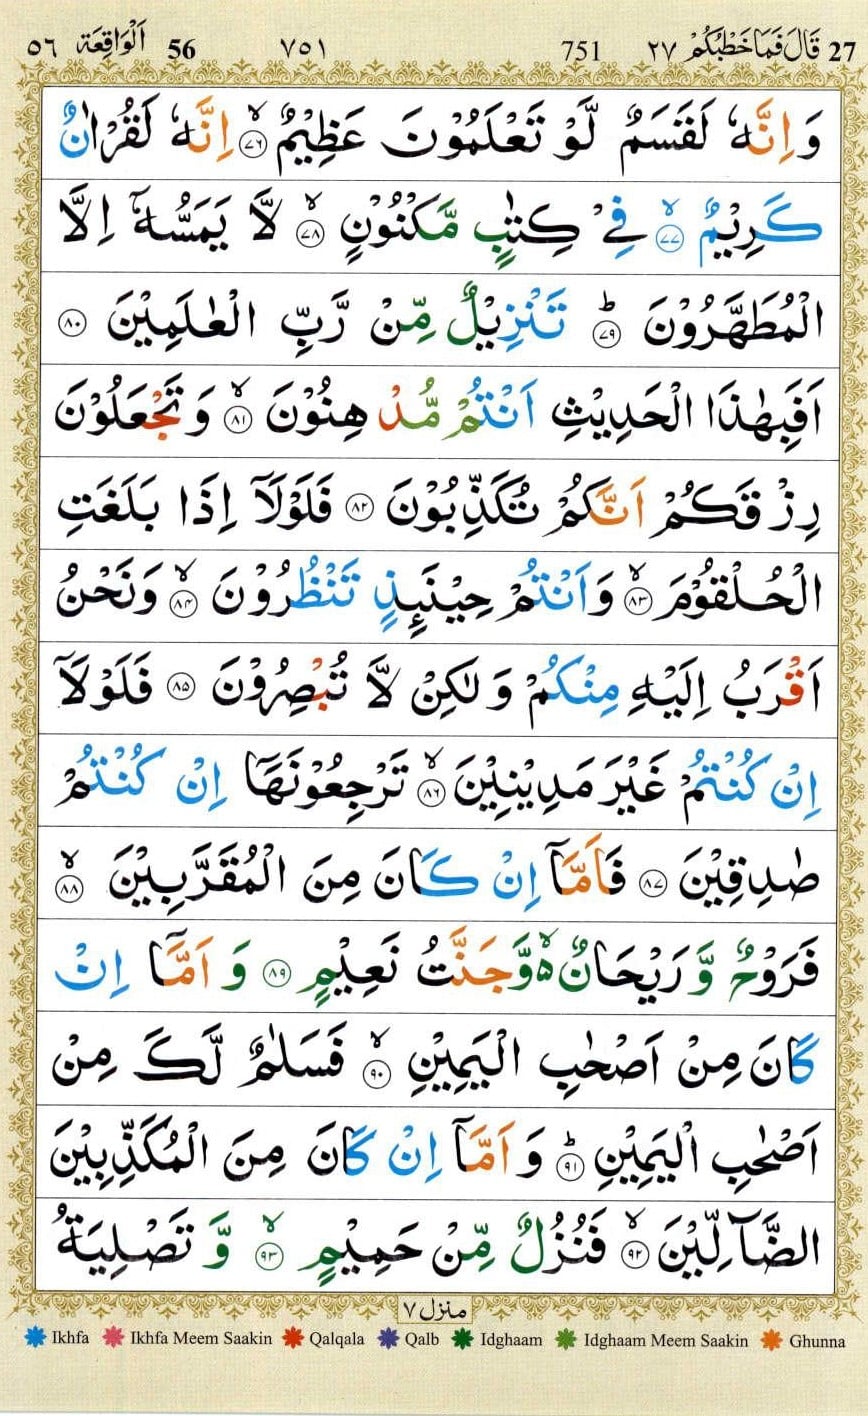 When to read Surah Waqiah?